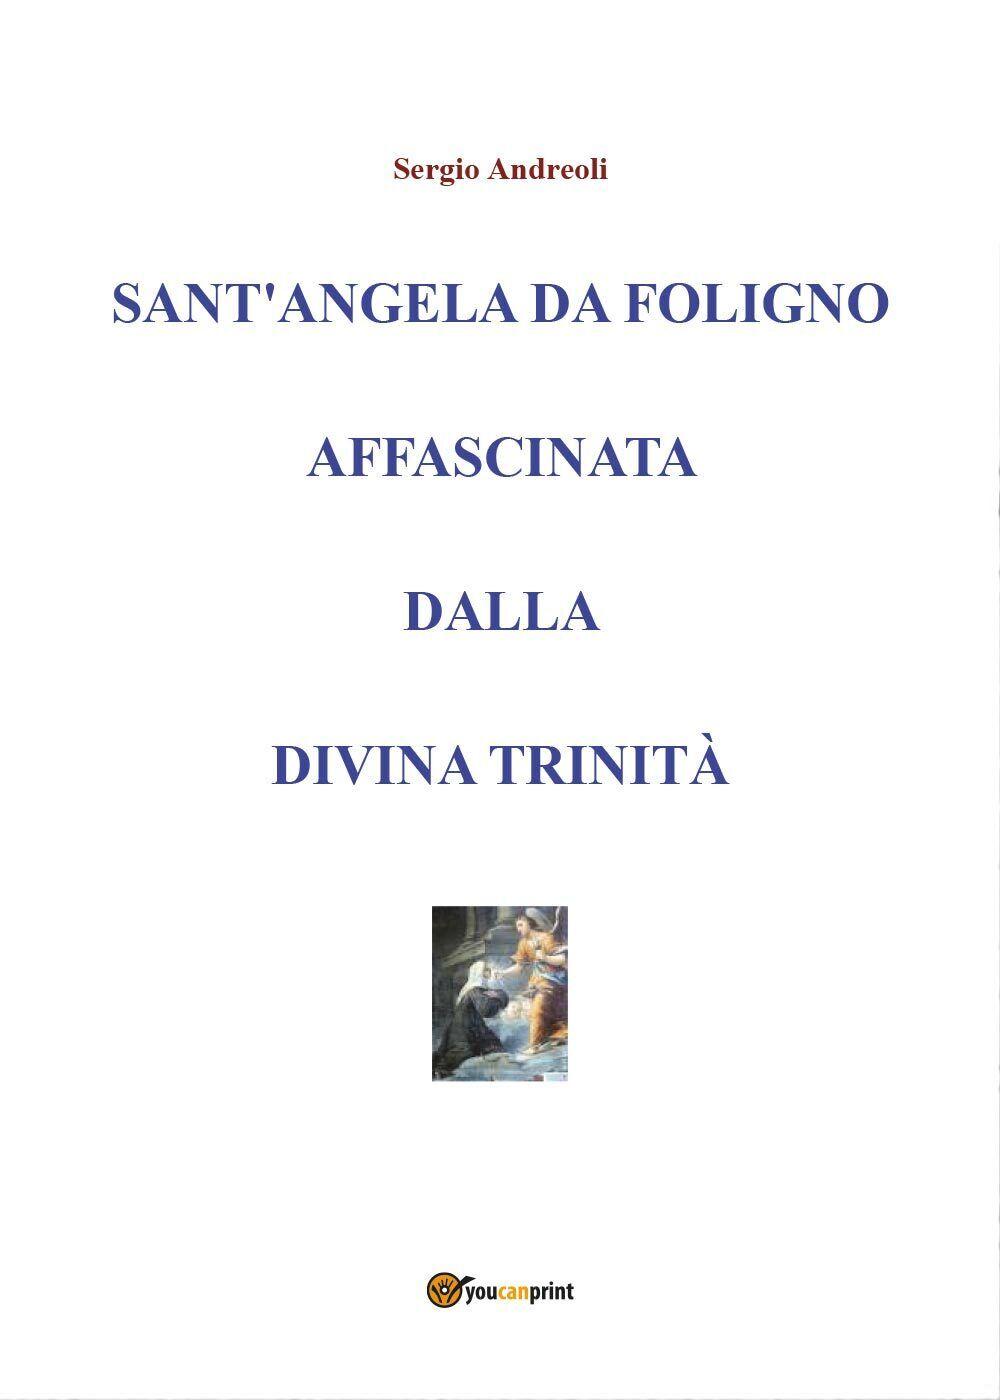 Sant?Angela da Foligno affascinata dalla Divina Trinit?  di Sergio Andreoli,2019